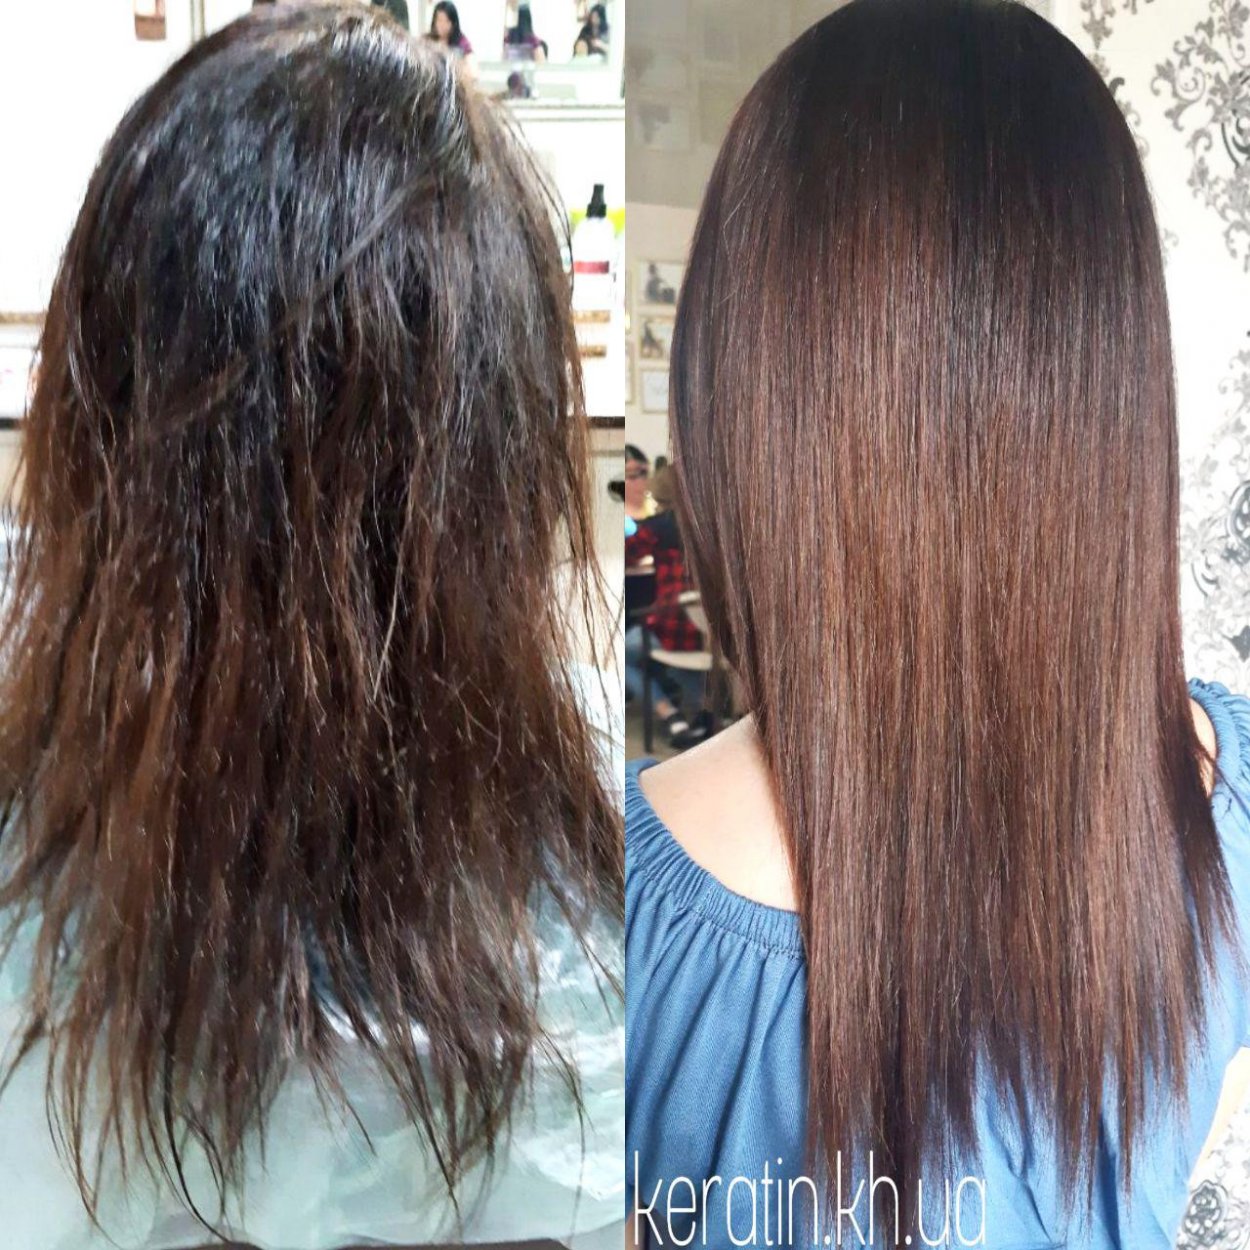 Филировка волос до и после фото женщины